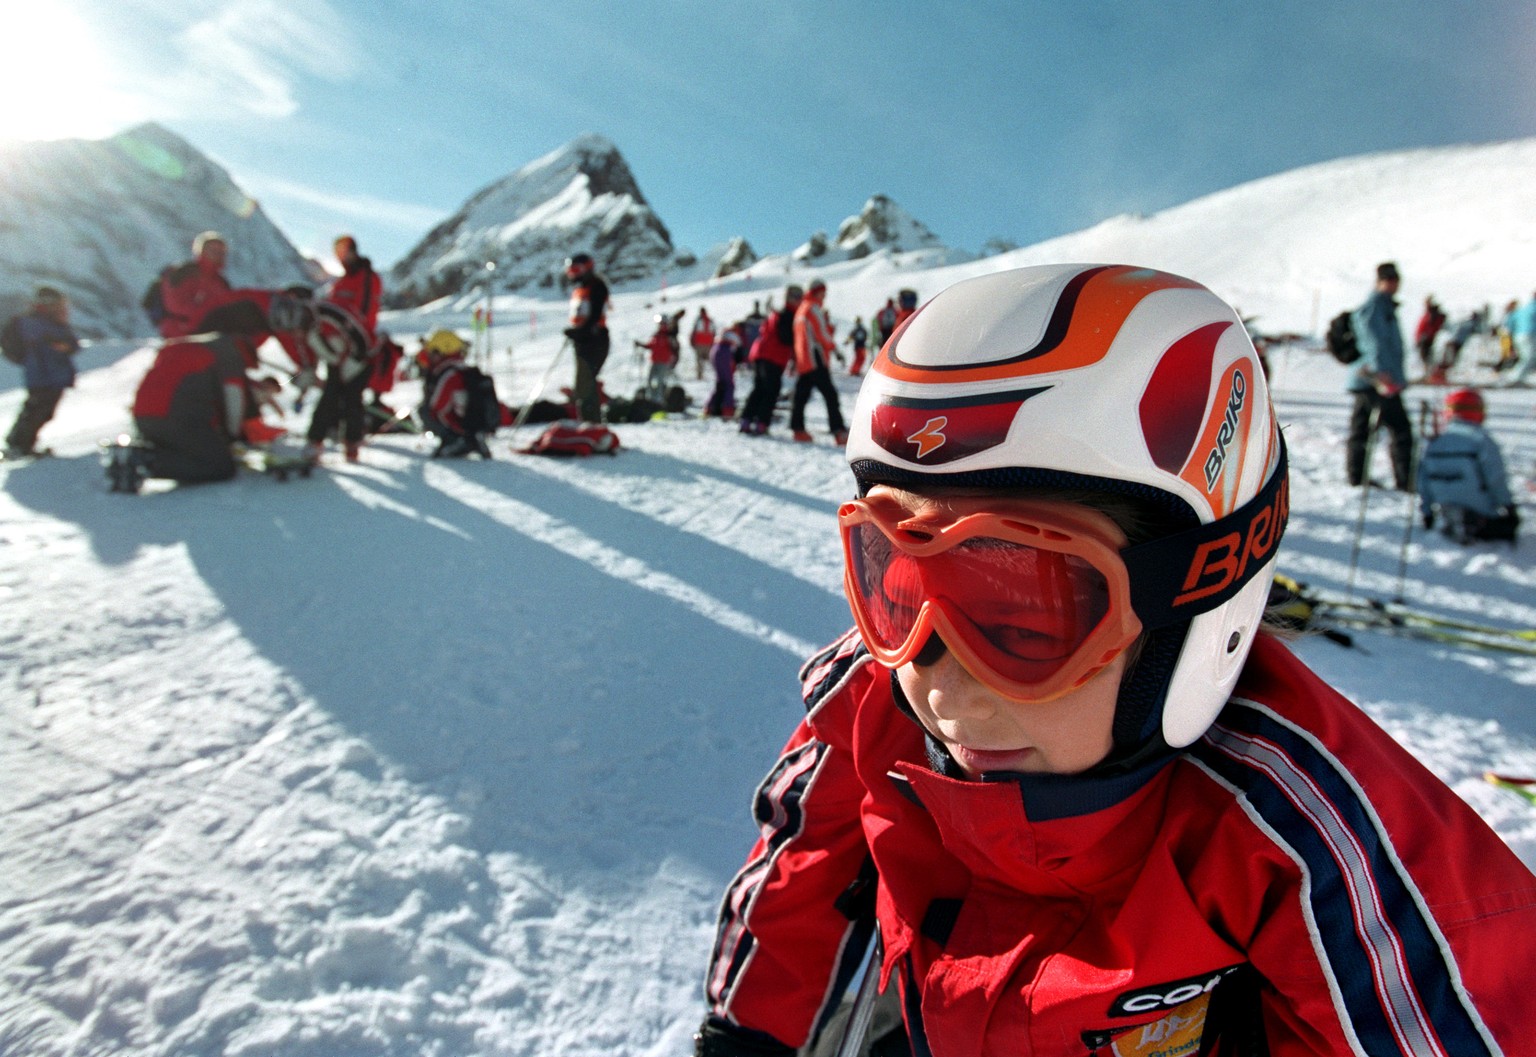 Eine Teilnehmerin des Grand Prix Migros wartet am 1. Februar 2004 in Grindelwald auf den Start des Riesenslaloms. Der Grand Prix Migros ist das erfolgreichste und einzigartige Skinachwuchsrennen in de ...